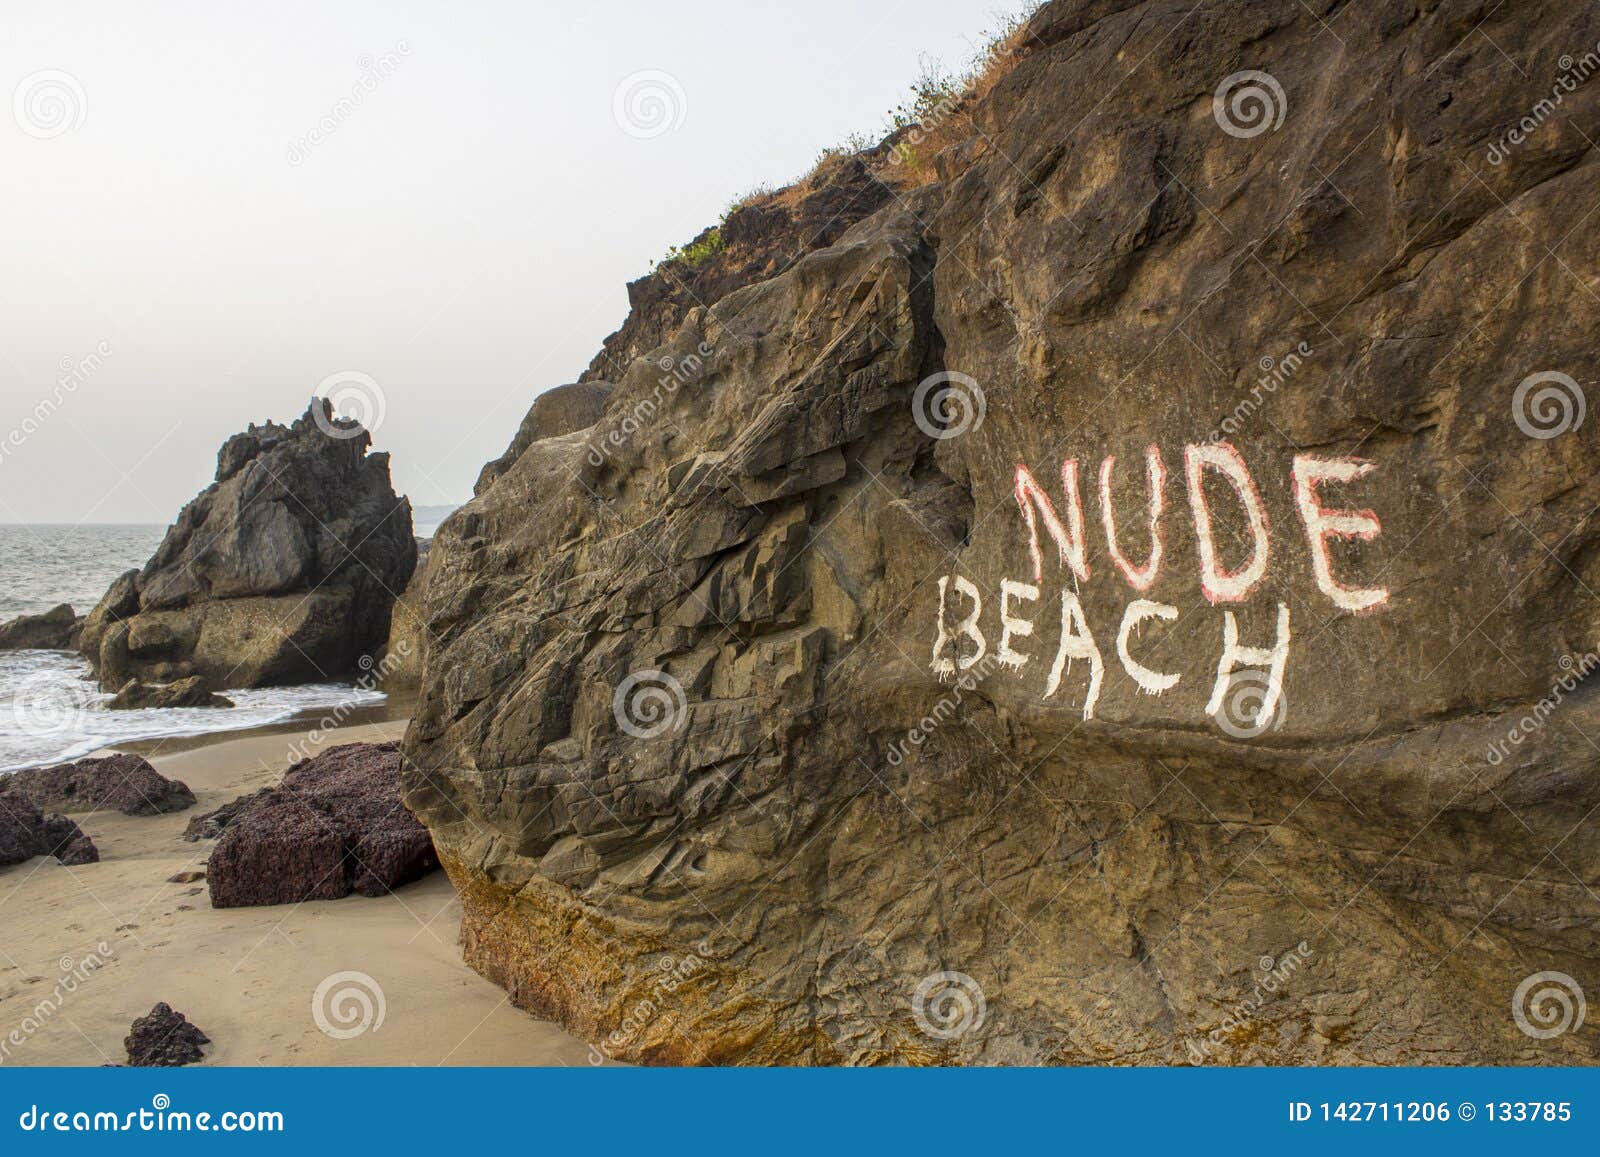 public nude beach fuck